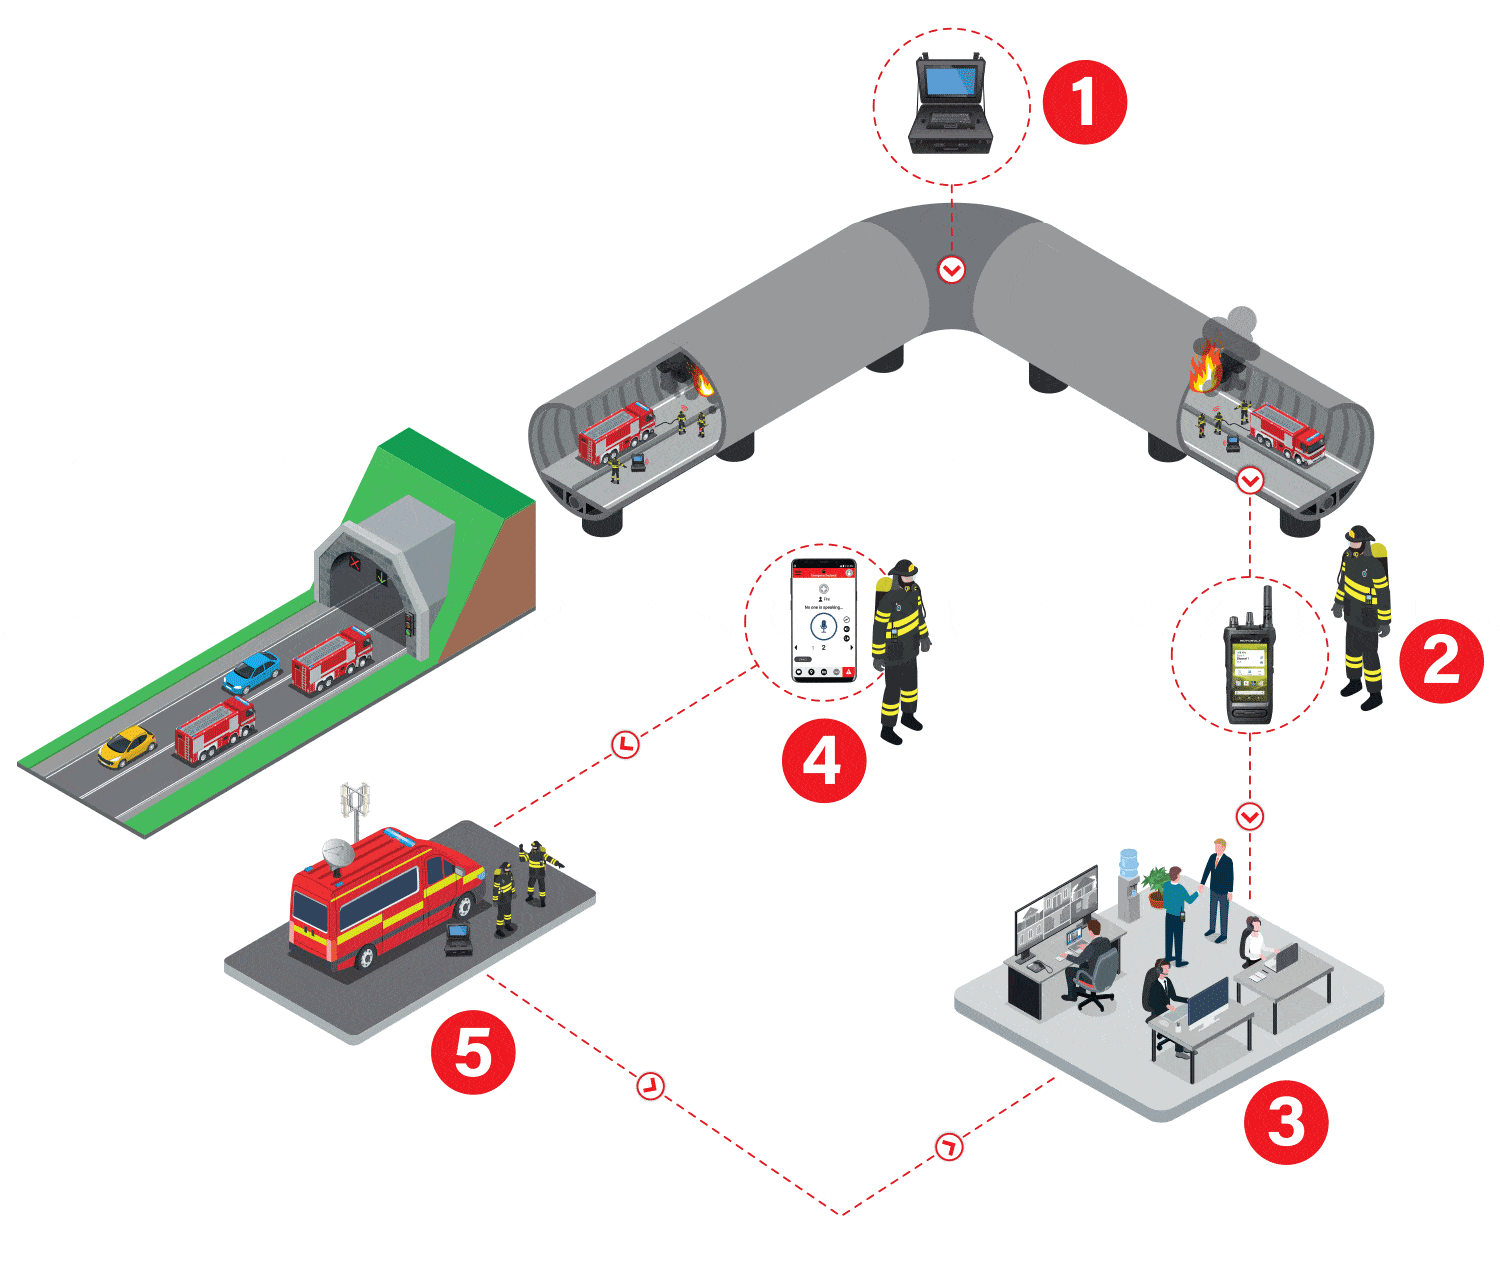 Scenario-3-Tunnel-fire-and-rescue-team